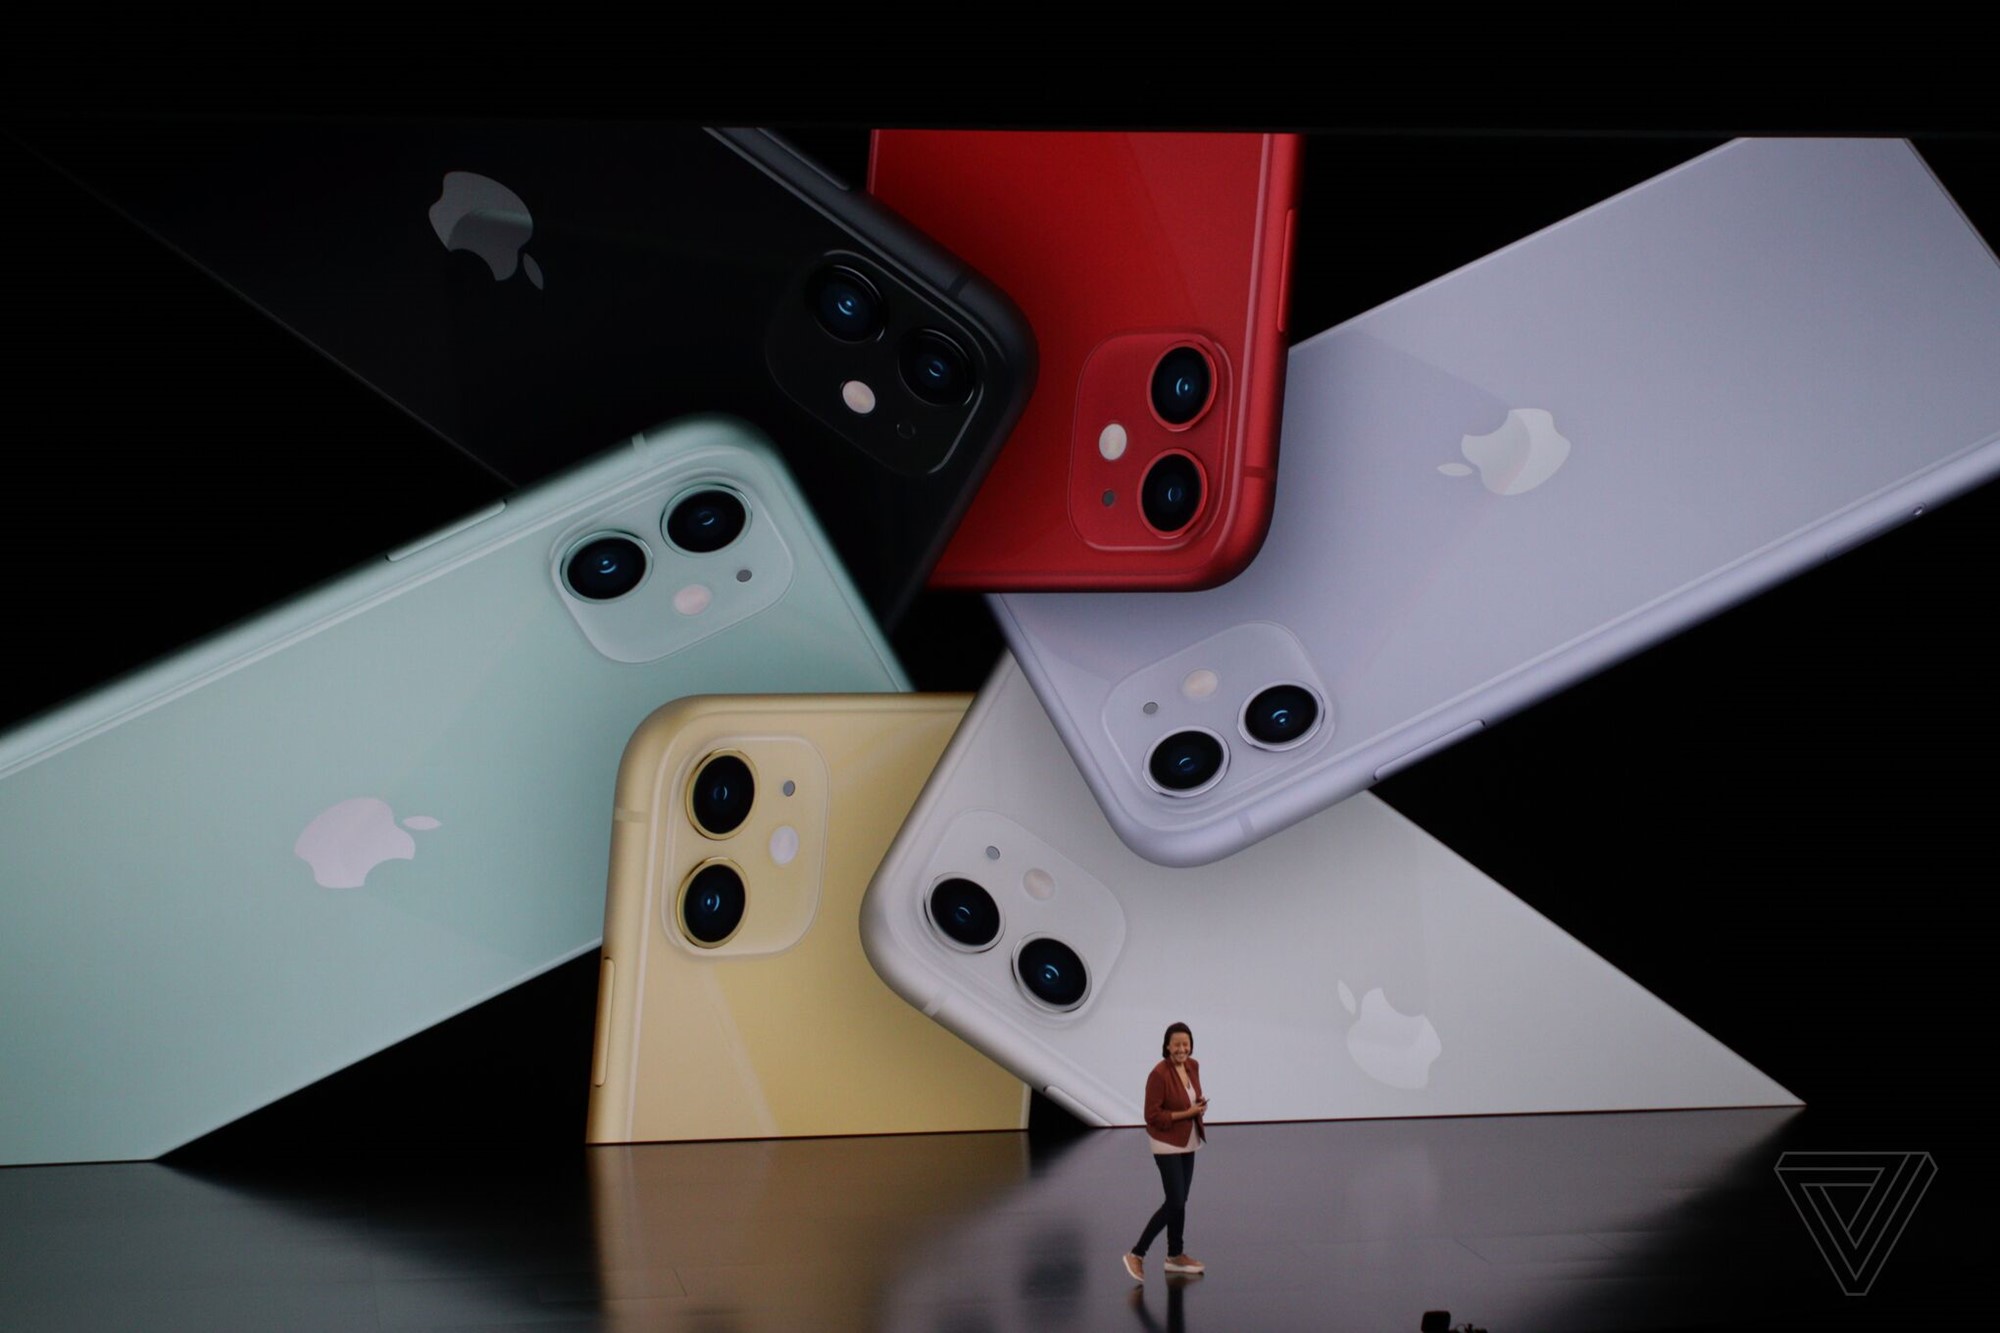 Apple chính thức ra
mắt iPhone 11 với camera góc siêu rộng, 6 tùy chọn màu sắc,
giá rẻ hơn iPhone XR